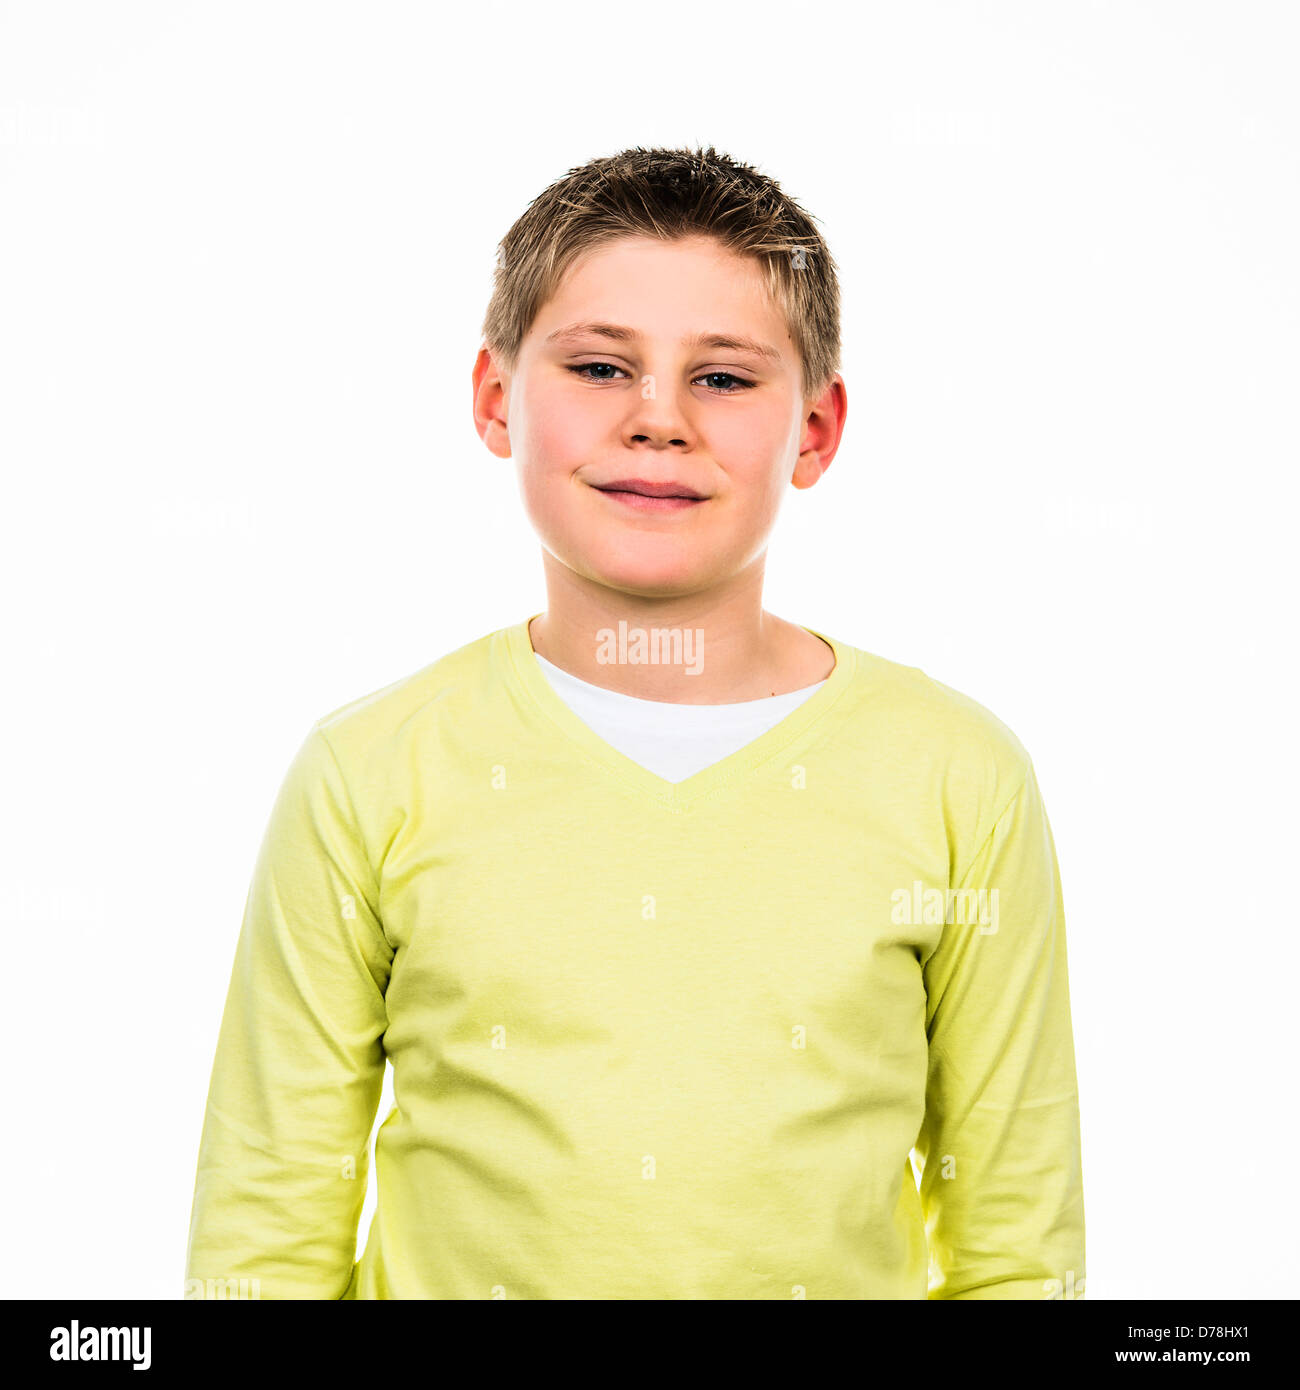 Porträt eines jungen Jungen mit Yello sweetshirt Stockfoto